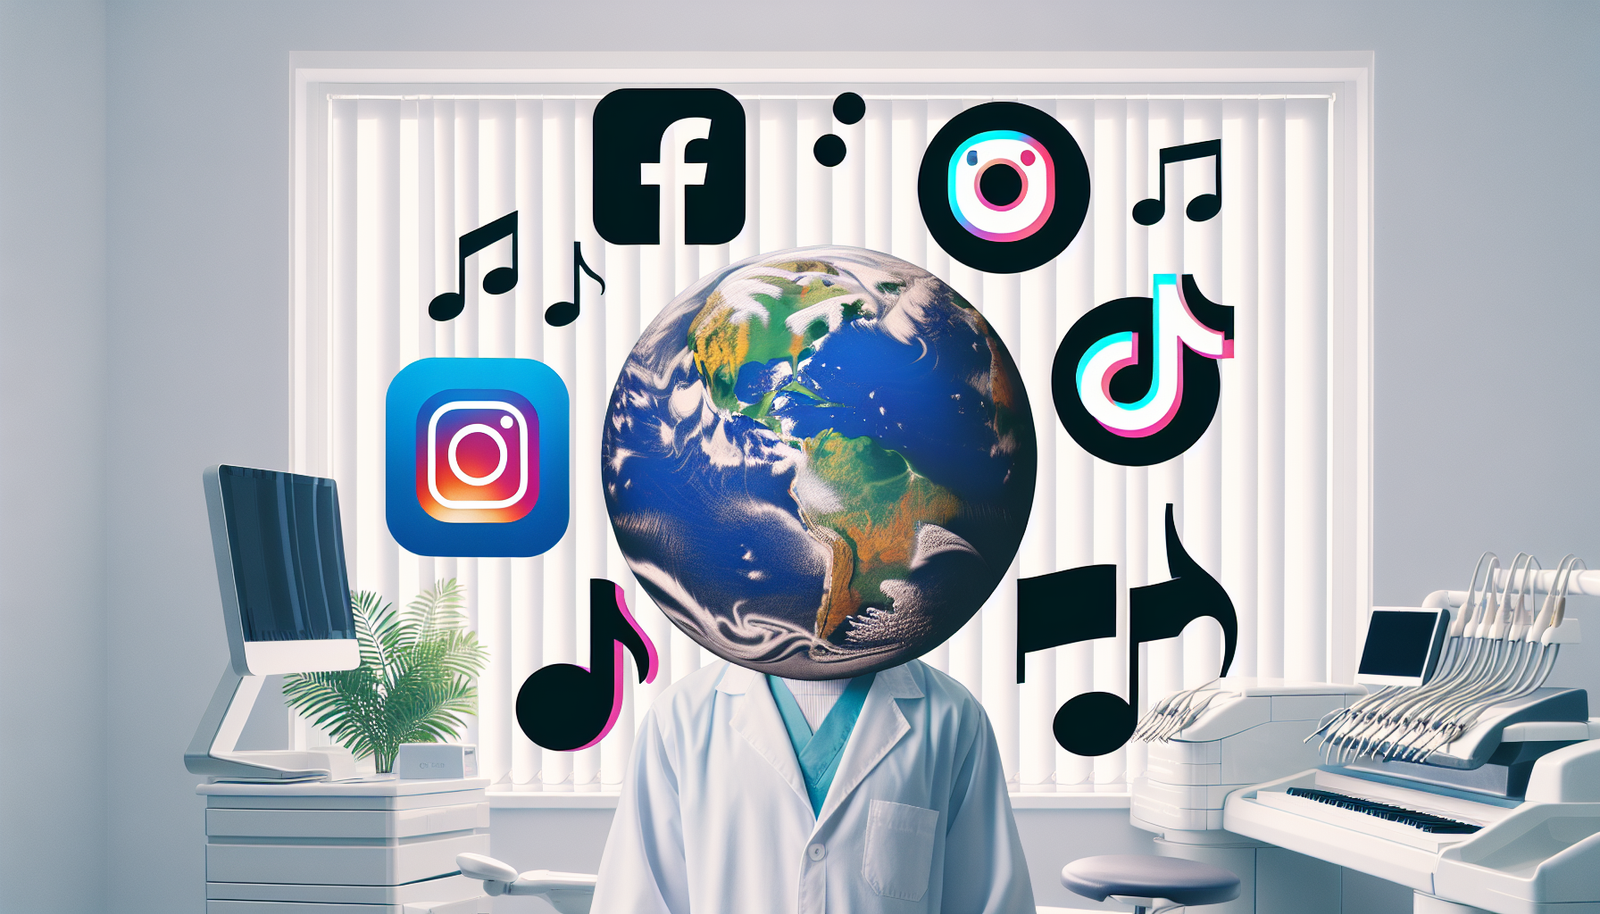 dentists use social media